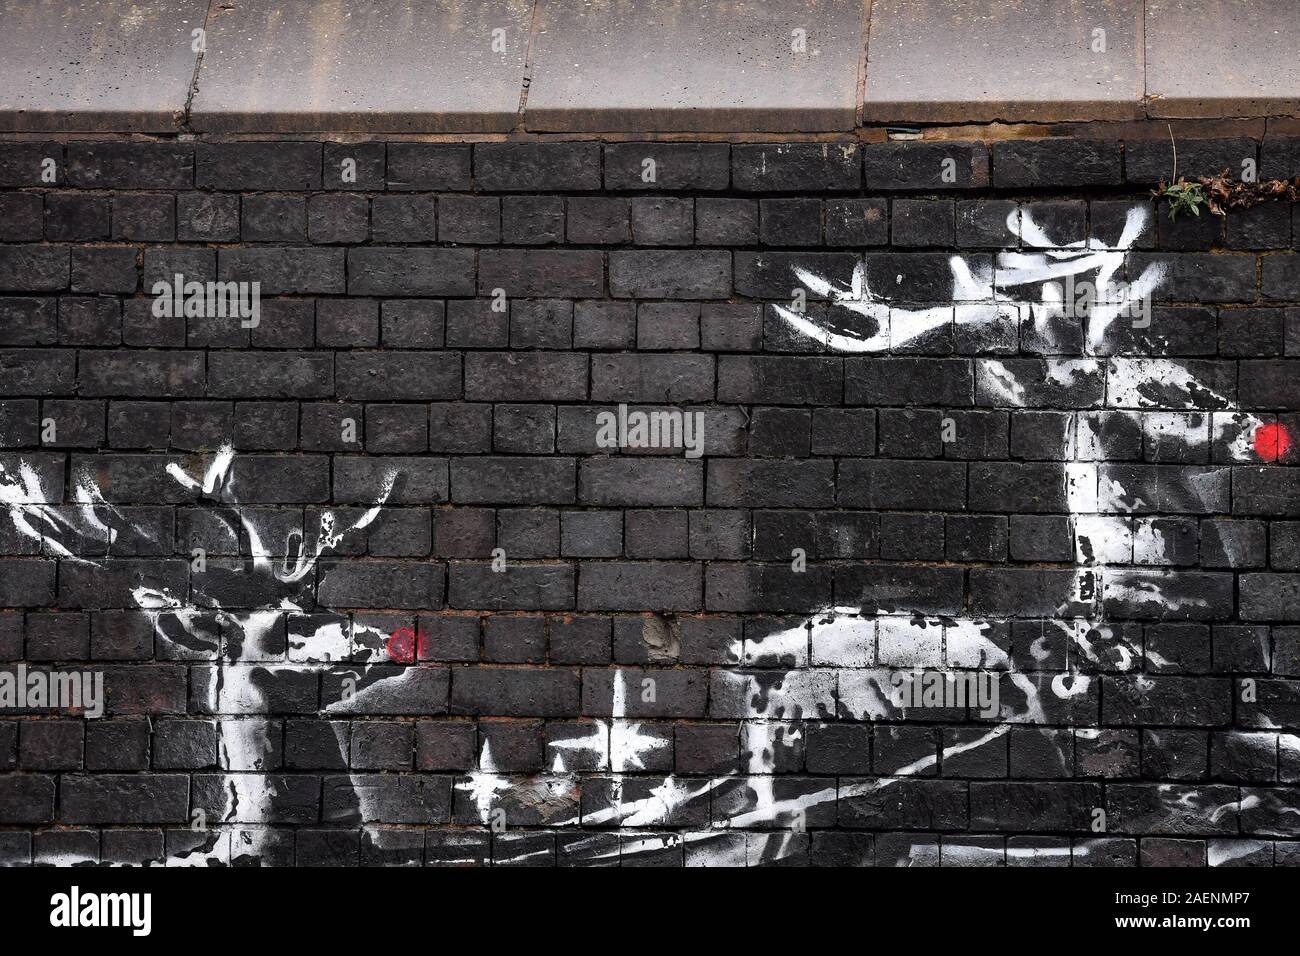 Eine neue Banksy Kunstwerke in Birmingham Schmuck Quartal erscheint Tage zerstört worden zu sein, nachdem es zum ersten Mal erschien. Das wandbild zeigt zwei Rentiere auf eine Mauer, die entlang einer Bank zu ziehen gemalt. Stockfoto